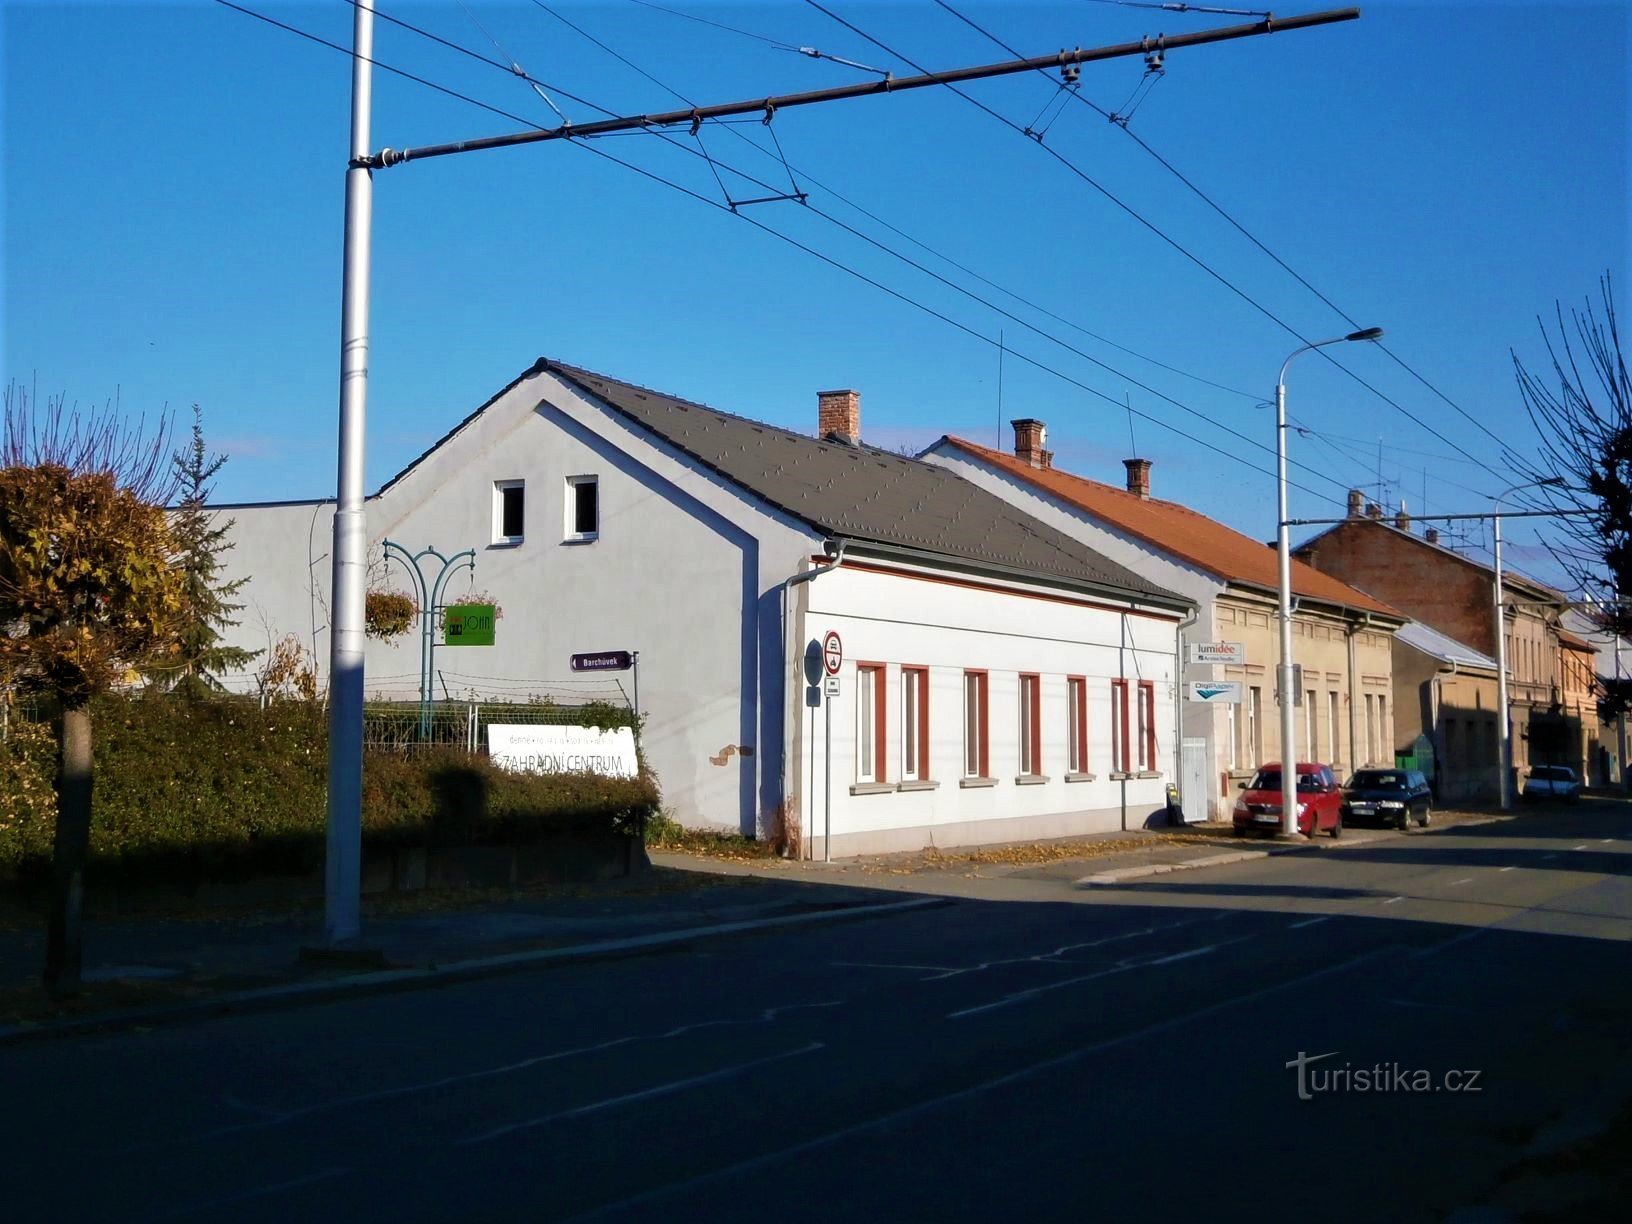 Lối vào Barchůvk và ngôi nhà số 142 (Hradec Králové, 13.11.2016/XNUMX/XNUMX)